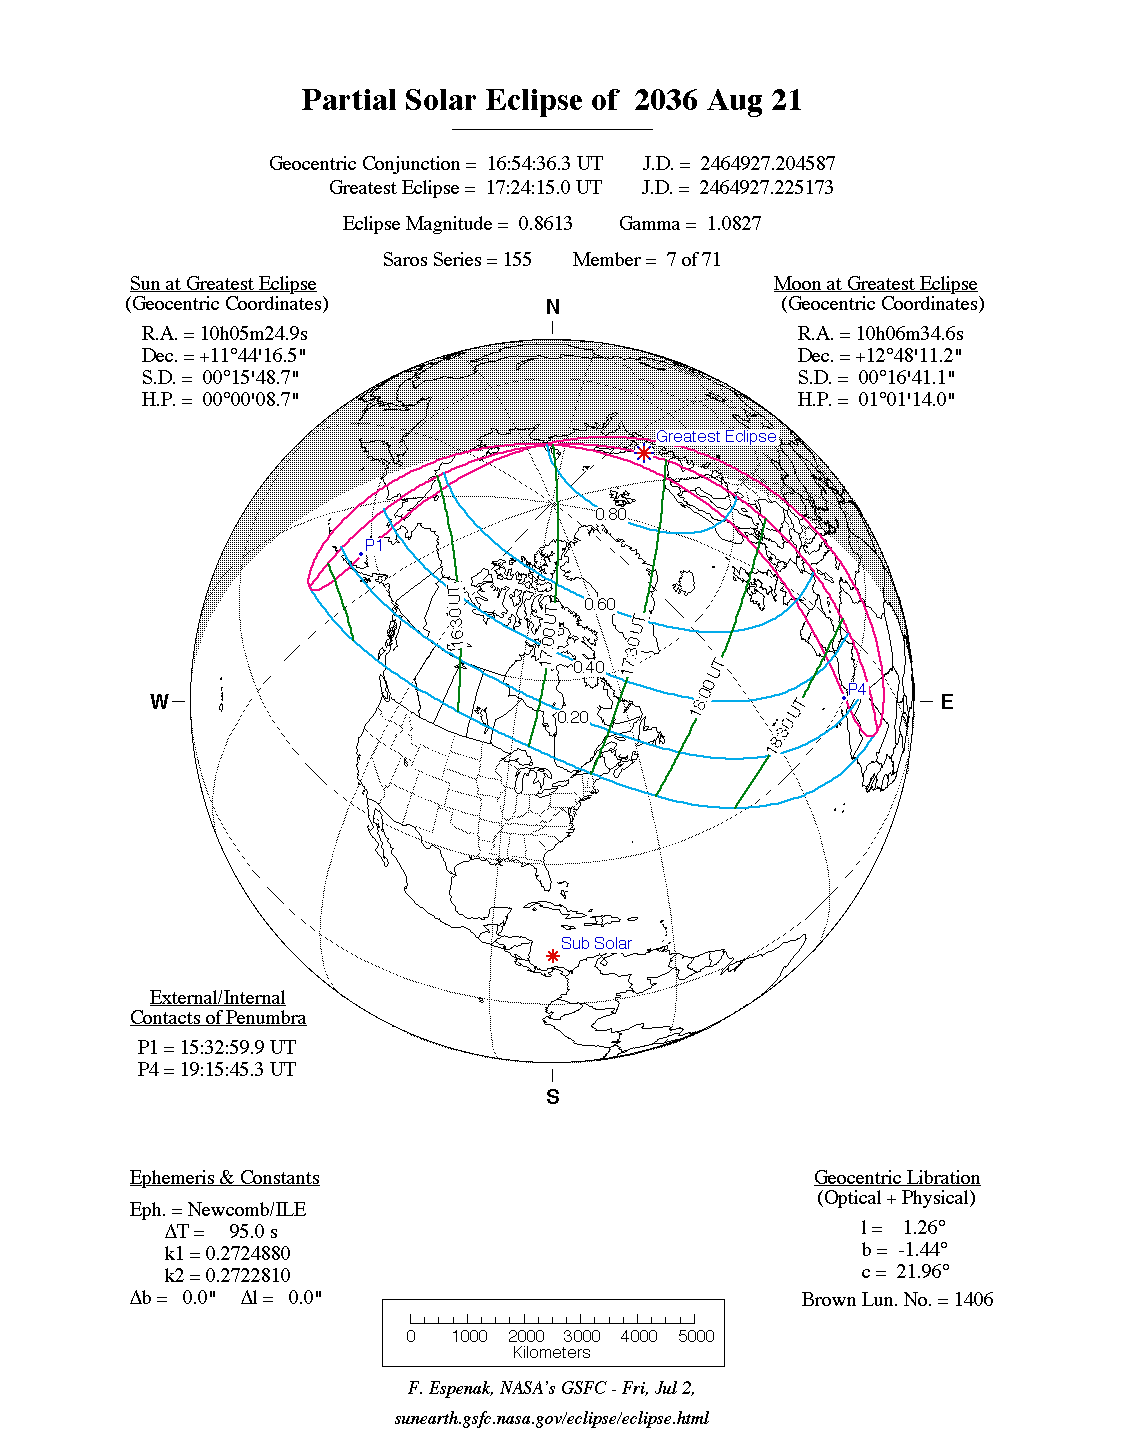 Verlauf der Partiellen Sonnenfinsternis am 21.08.2036